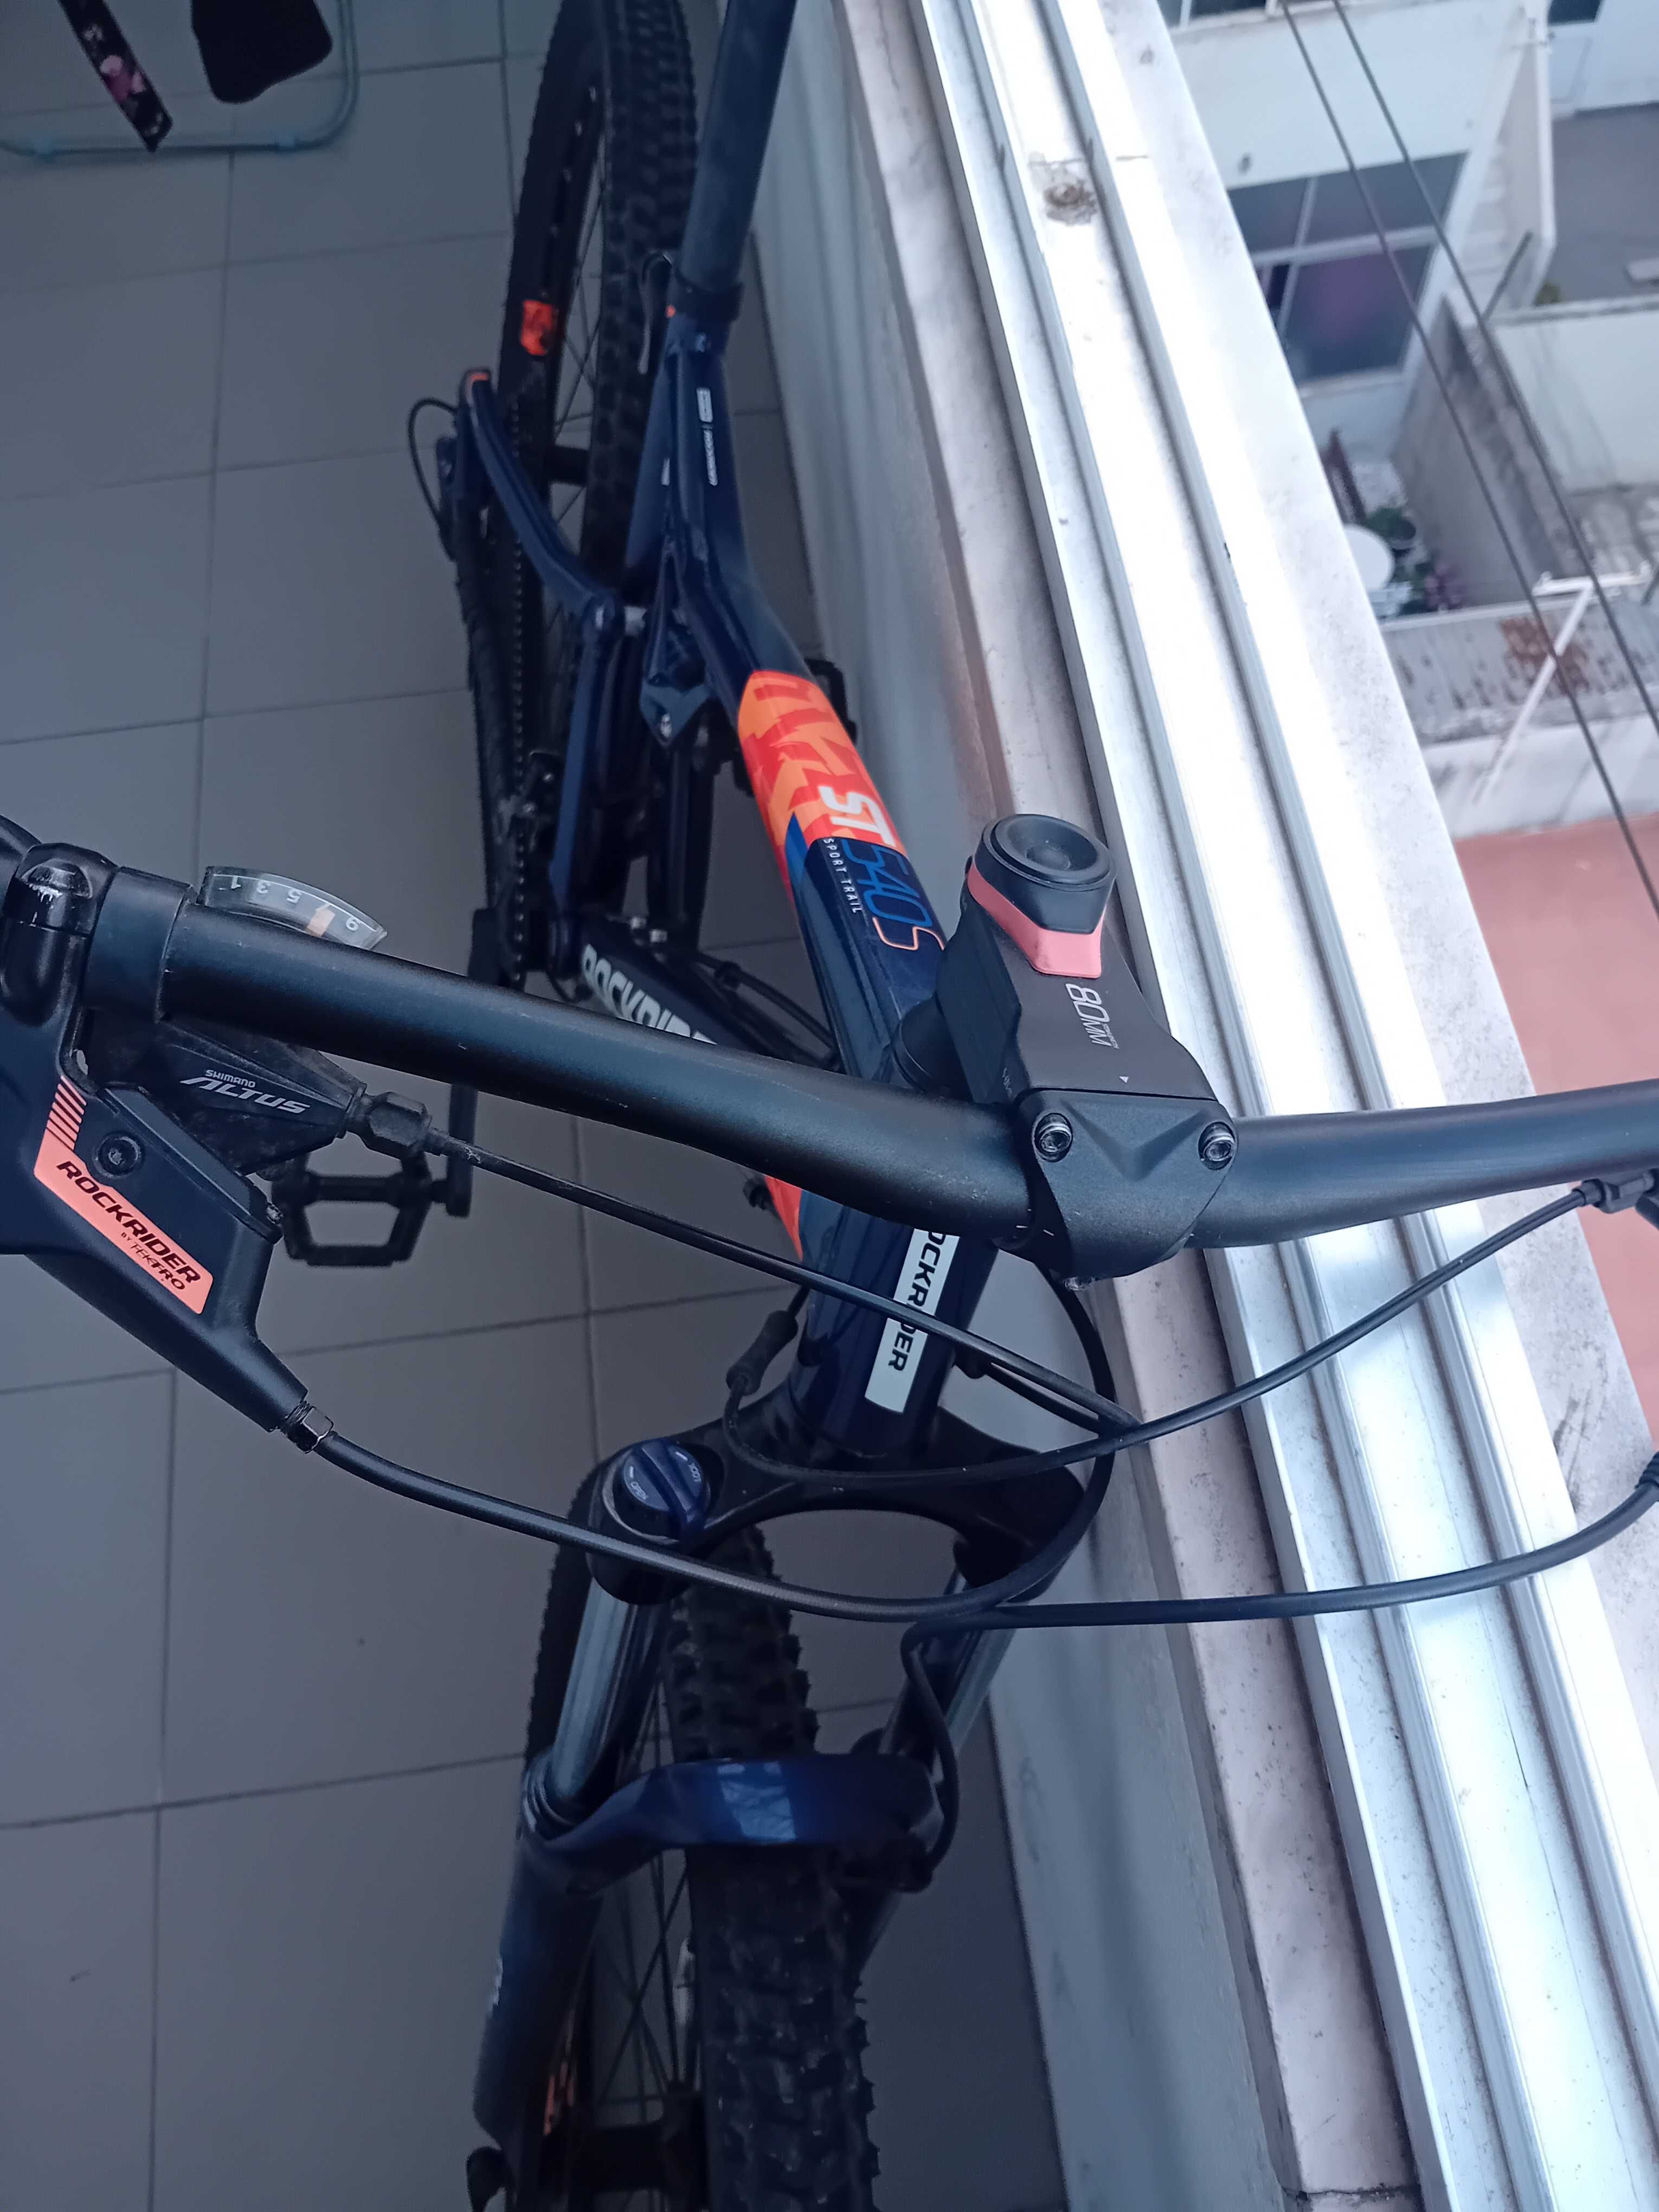 Bicicleta btt suspensão total st 540 S 27,5" azul/laranja